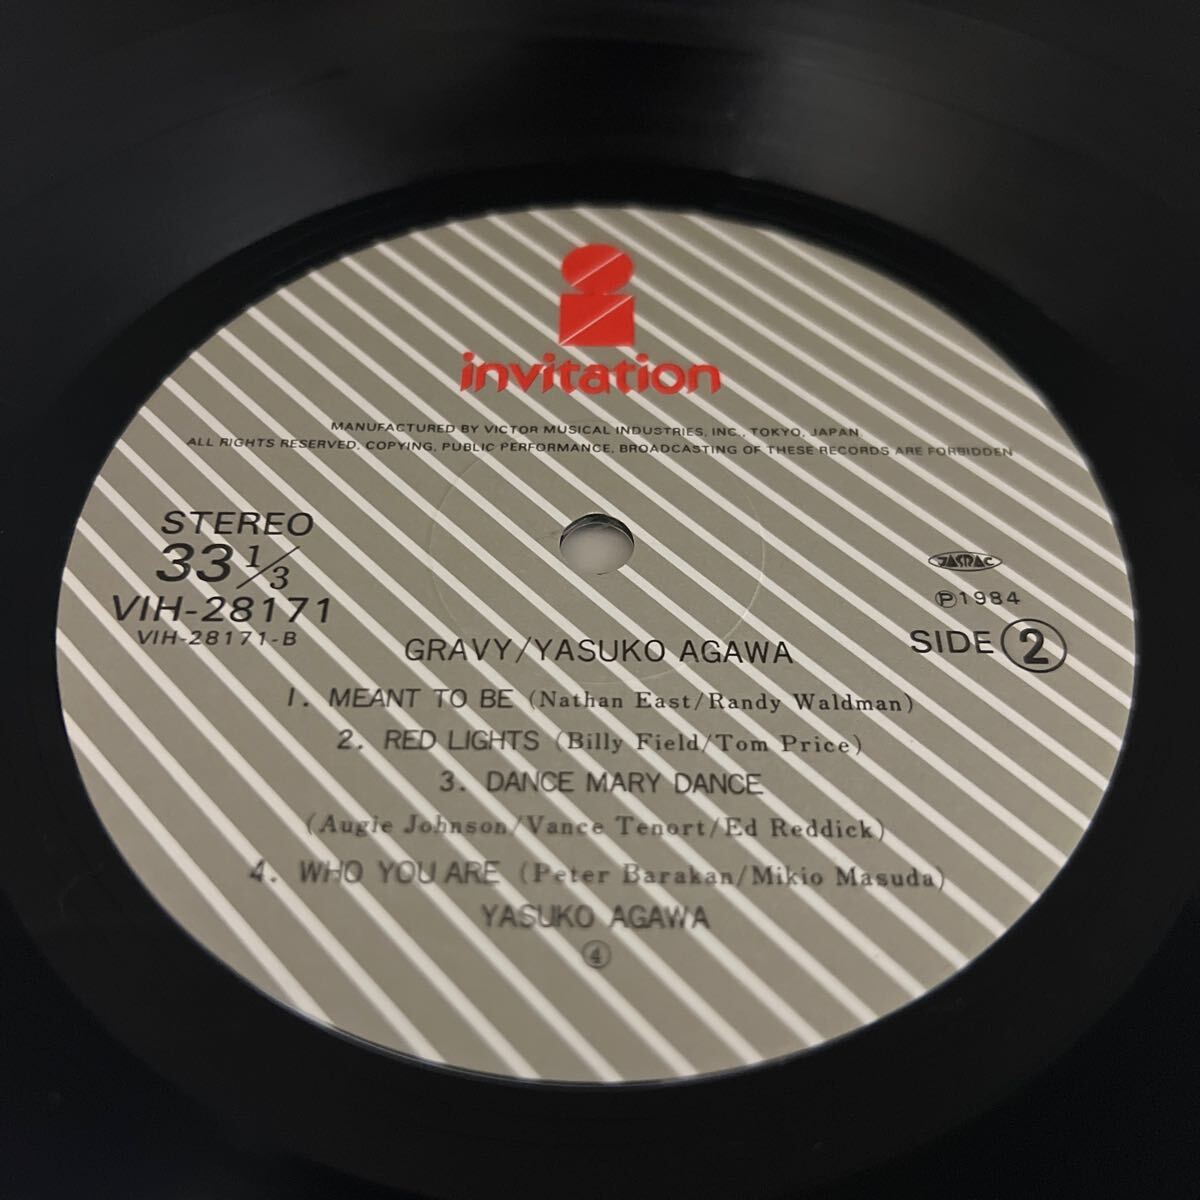 阿川泰子 GRAVY オリジナル盤 ビクター VIH-28171 L.A.Night 収録 Yasuko Agawa アーバンメロウ LP の画像6